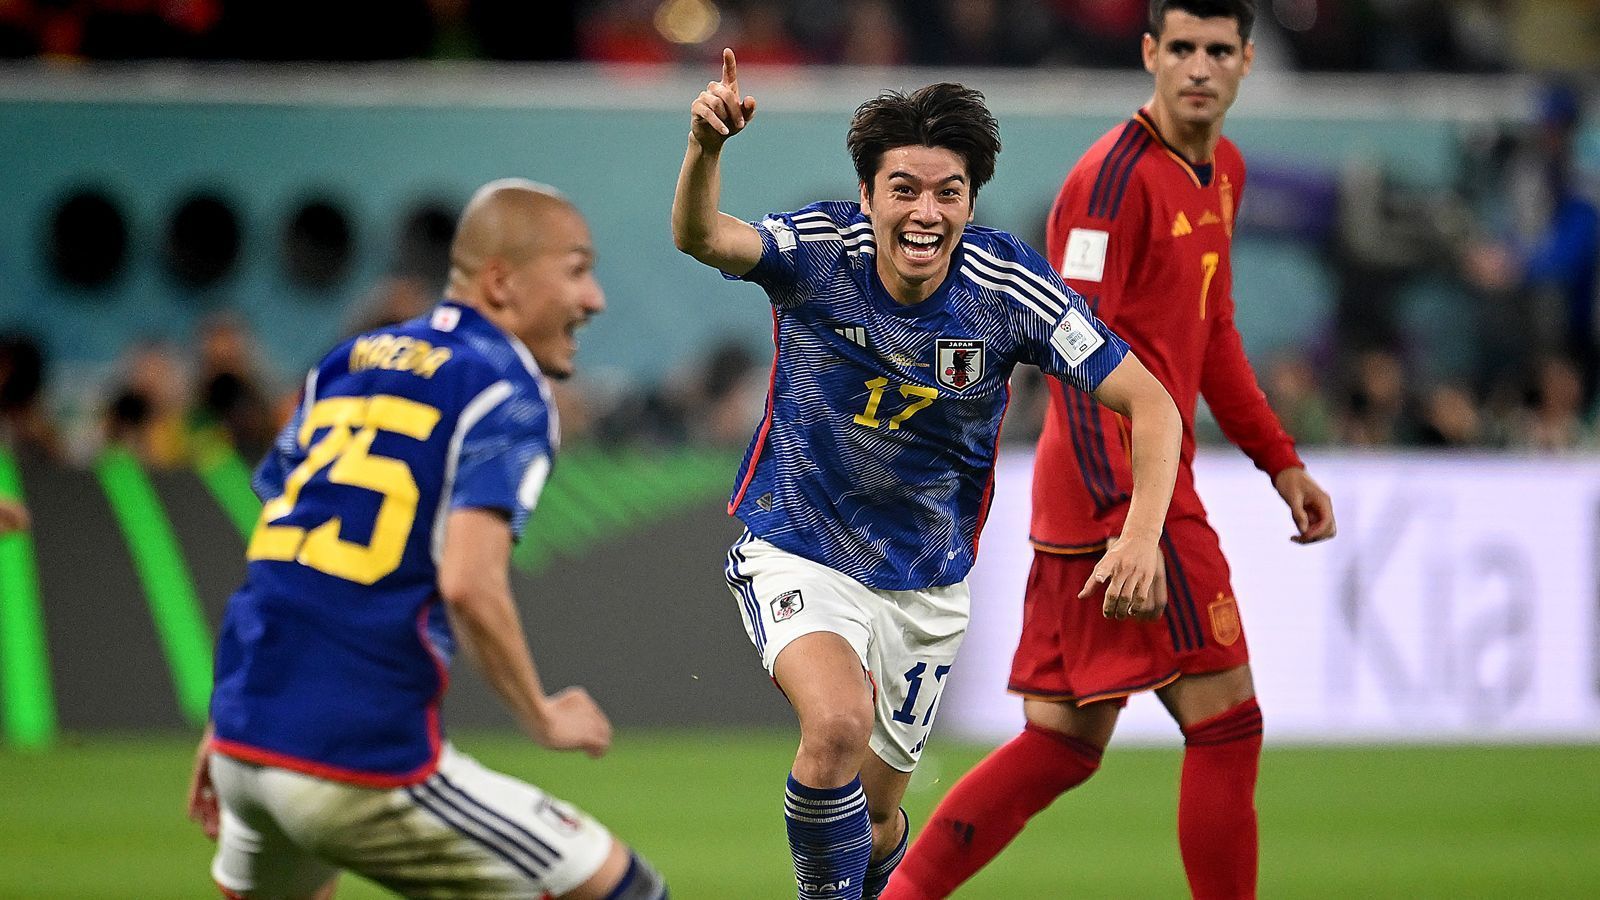 
                <strong>Japan: Historischer Sieg mit nur 17,7 Prozent Ballbesitz</strong><br>
                Die japanische Nationalmannschaft hat bei der WM 2022 in Katar nicht nur Deutschland mit 2:1 geschlagen, sondern zum Abschluss der Vorrunde auch noch Spanien mit demselben Ergebnis bezwungen. Dieser 2:1-Sieg gegen die Iberer hatte sogar historische Ausmaße. Mit nur 17,7 Prozent Ballbesitz behielt Japan die Oberhand gegen Spanien - noch nie zuvor in der WM-Geschichte hatte ein Tam in einem WM-Spiel siegreiche Mannschaft so wenig Ballbesitz. 
              